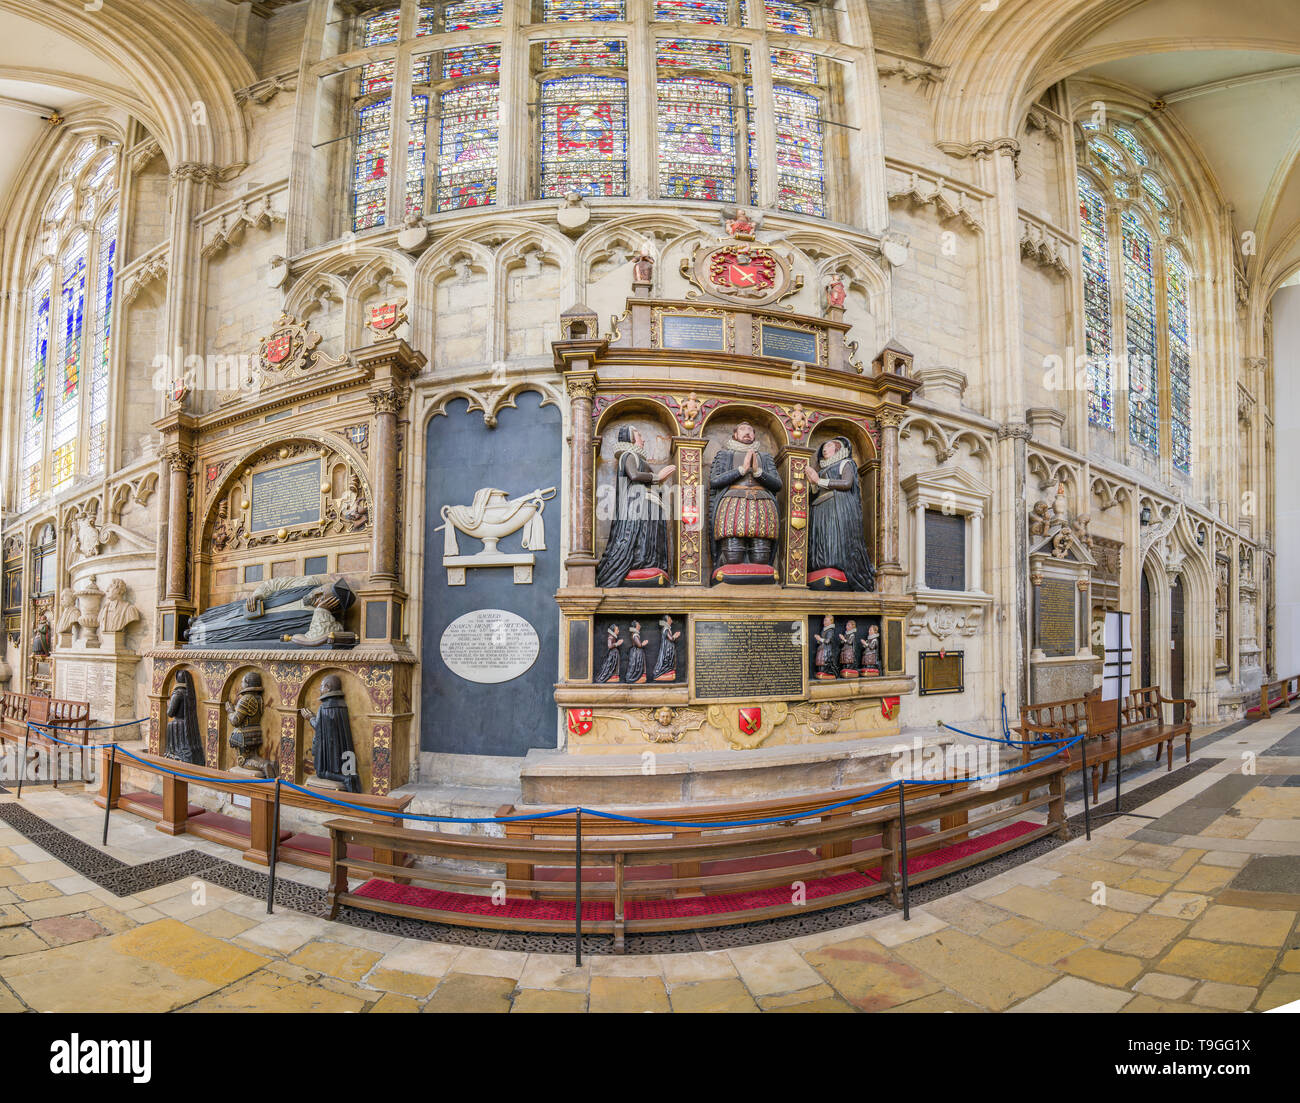 Varietà di memorial di monumenti e sculture sulla parete del sud cudiero corsia nel medioevo cristiano minster (cattedrale) a York, Inghilterra. Foto Stock